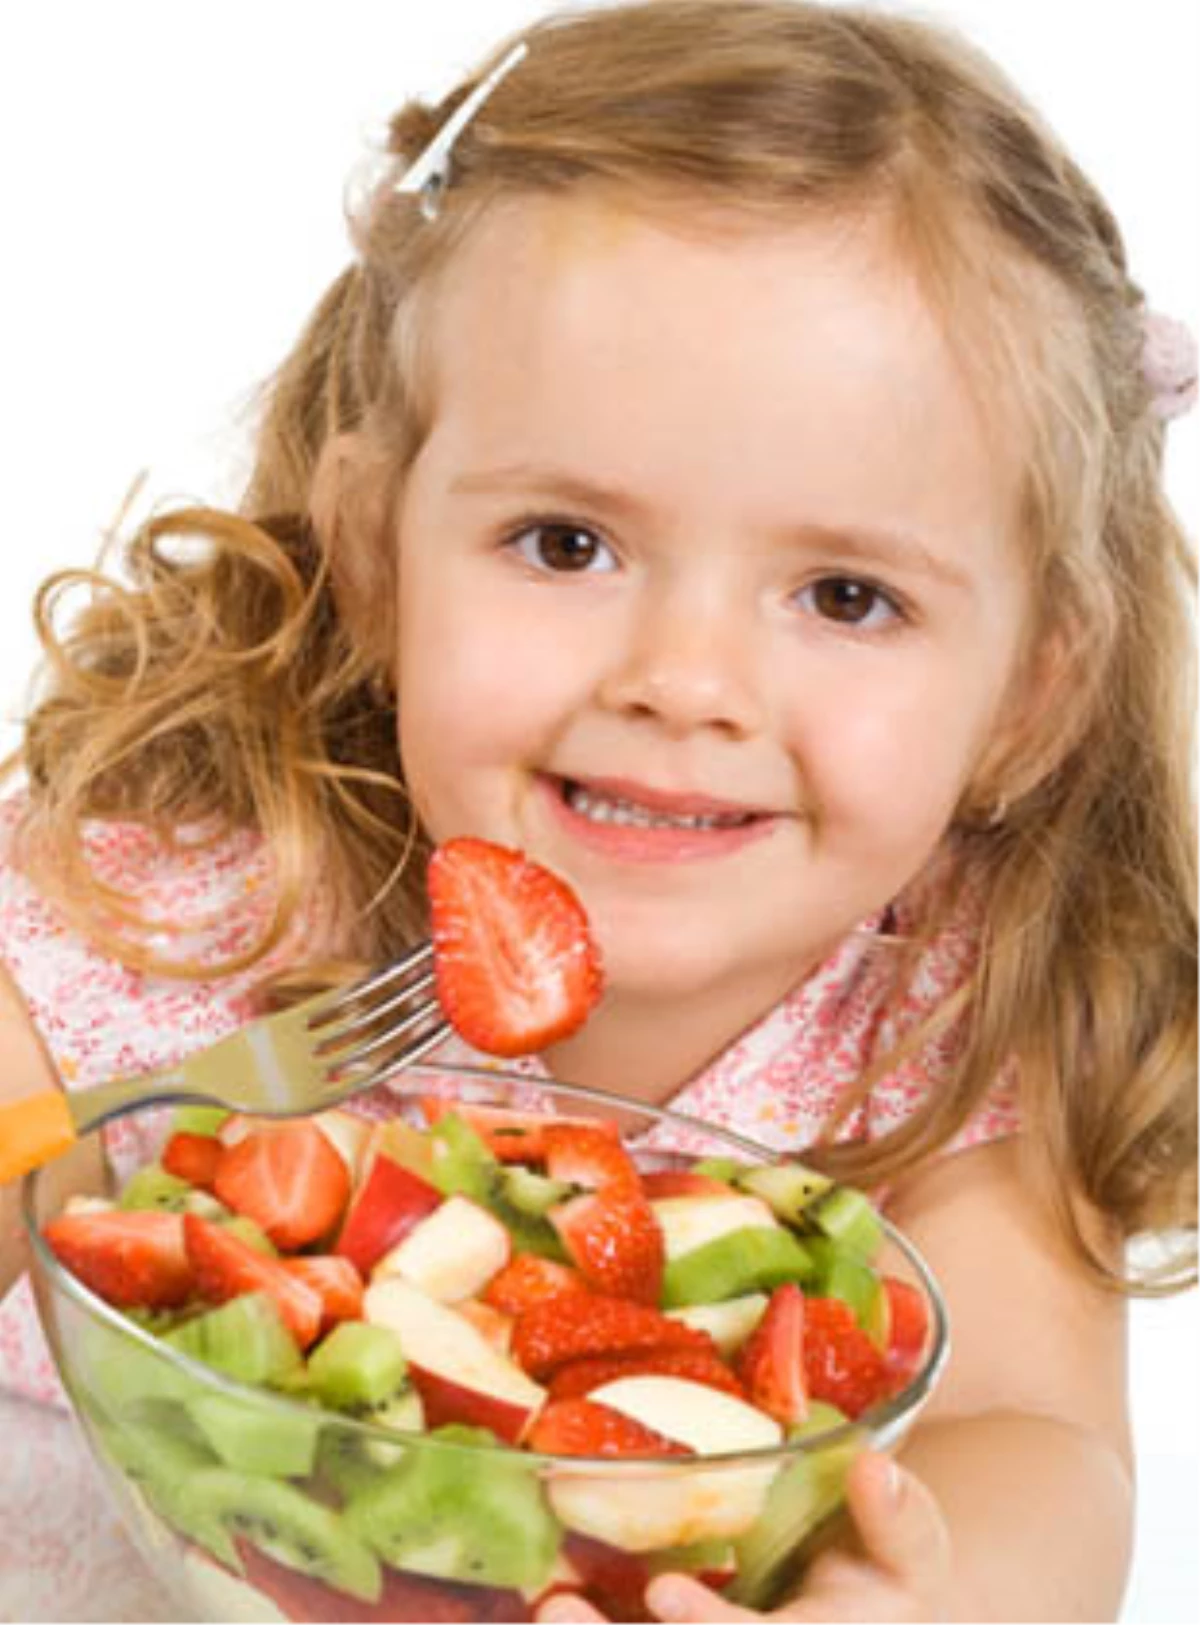 SEK\'ten Çocuklara Sağlıklı Beslenme Kılavuzu

 
